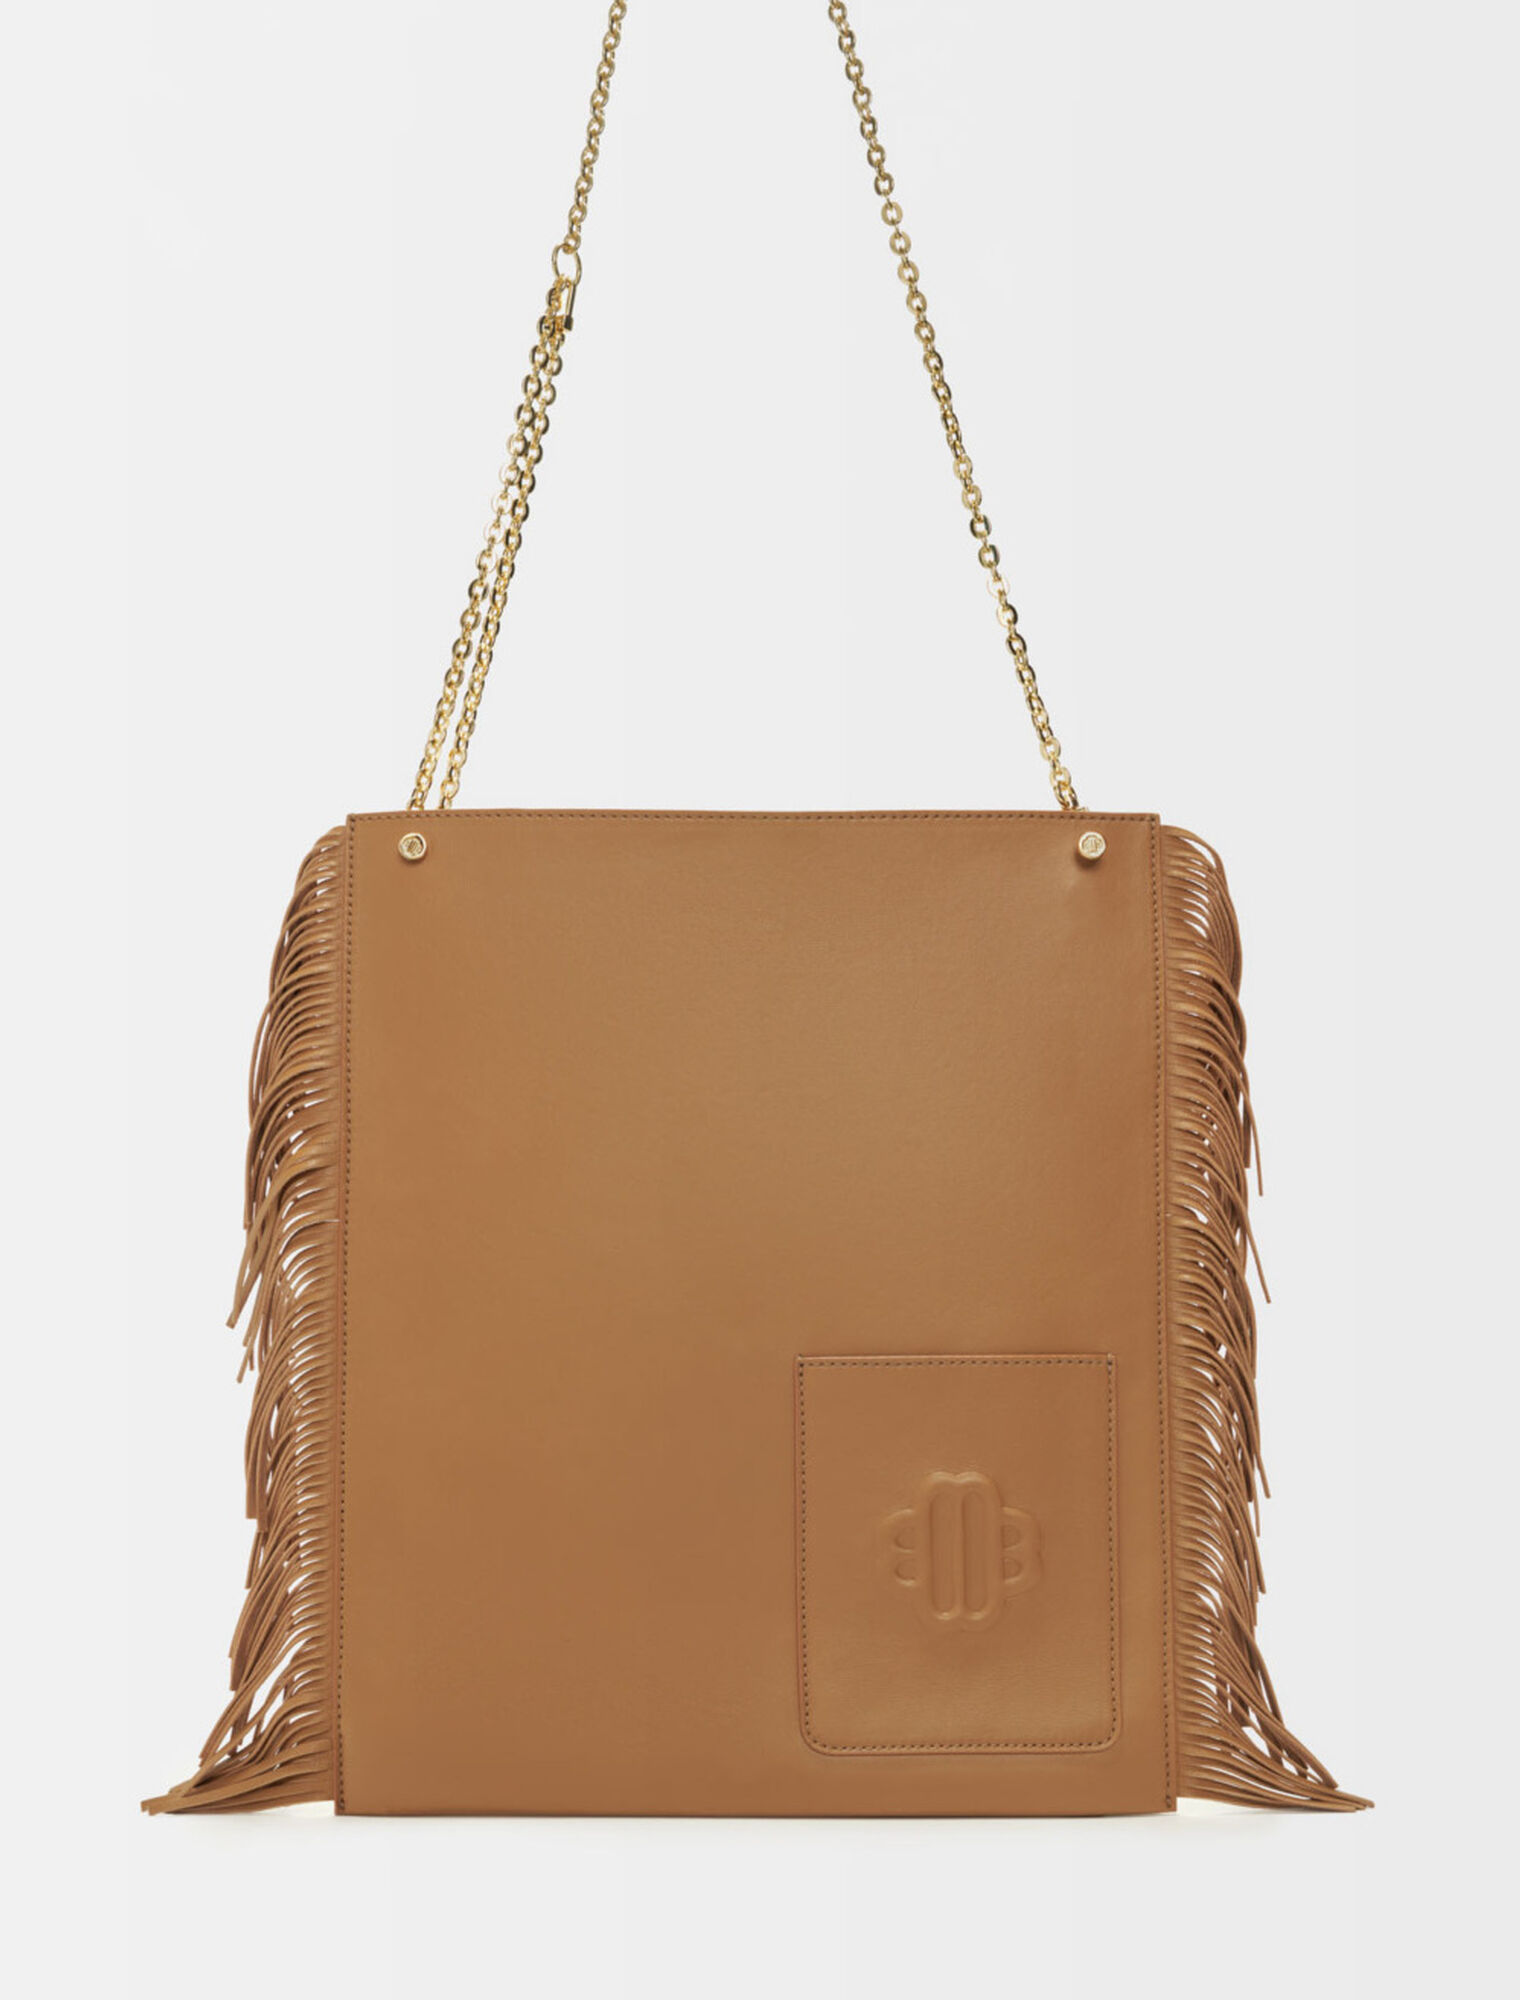 Clover fringed leather bag